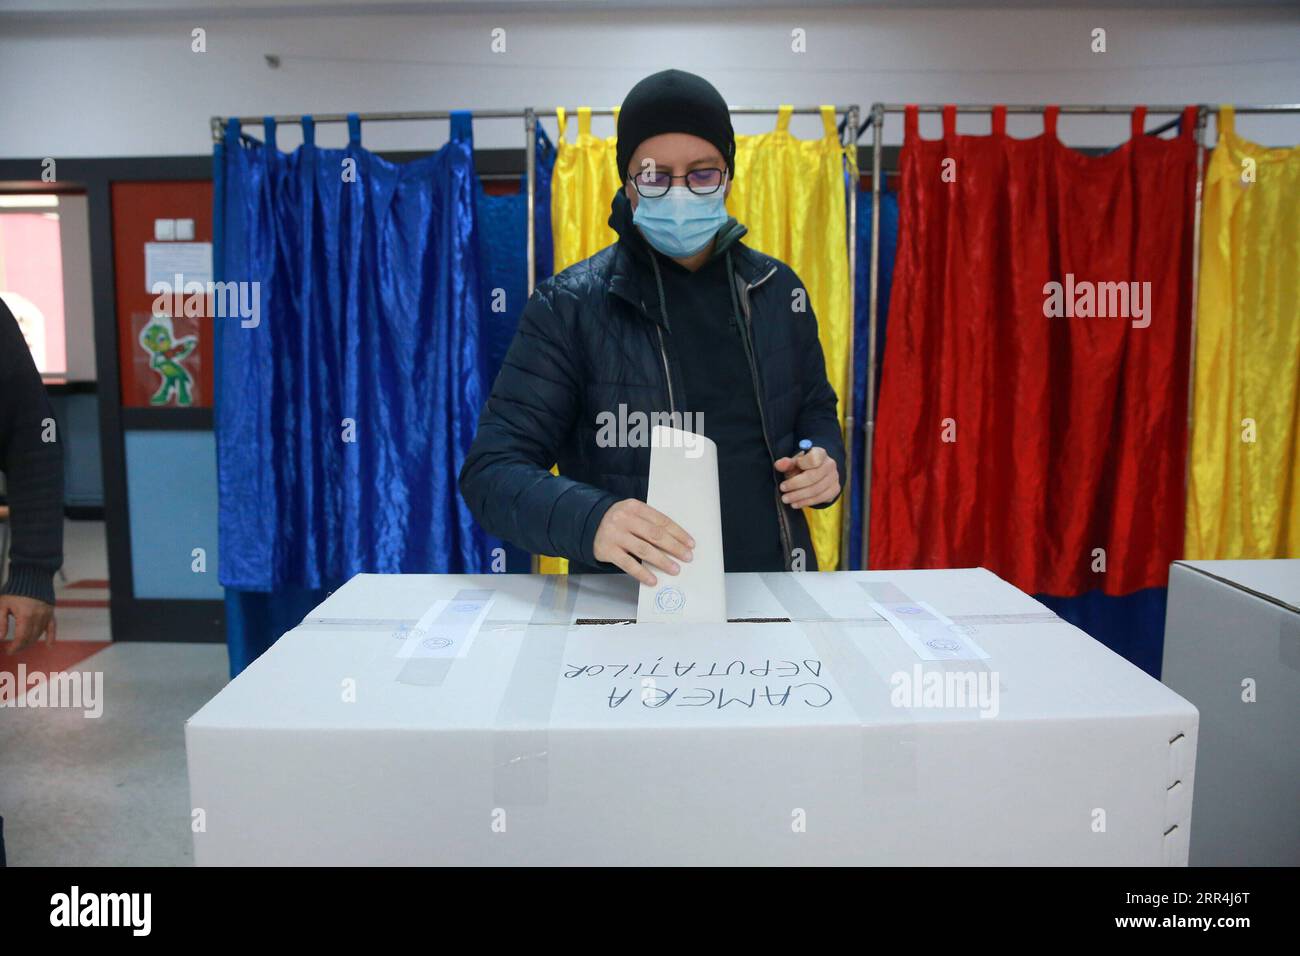 201206 -- BUKAREST, 6. Dezember 2020 -- Ein Wähler mit Gesichtsmaske gibt eine Stimmabgabe bei einer Wahlstation in Bukarest, Rumänien, 6. Dezember 2020. Im Rahmen besonderer Schutzmaßnahmen werden voraussichtlich am Sonntag über 18 Millionen Rumänen ihre Stimmzettel abgeben, um ein neues zweikammerparlament für die nächsten vier Jahre zu wählen. Foto: /Xinhua ROMANIA-BUKAREST-PALIAMENTARY WAHLVOGEL GabrielxPetrescu PUBLICATIONxNOTxINxCHN Stockfoto